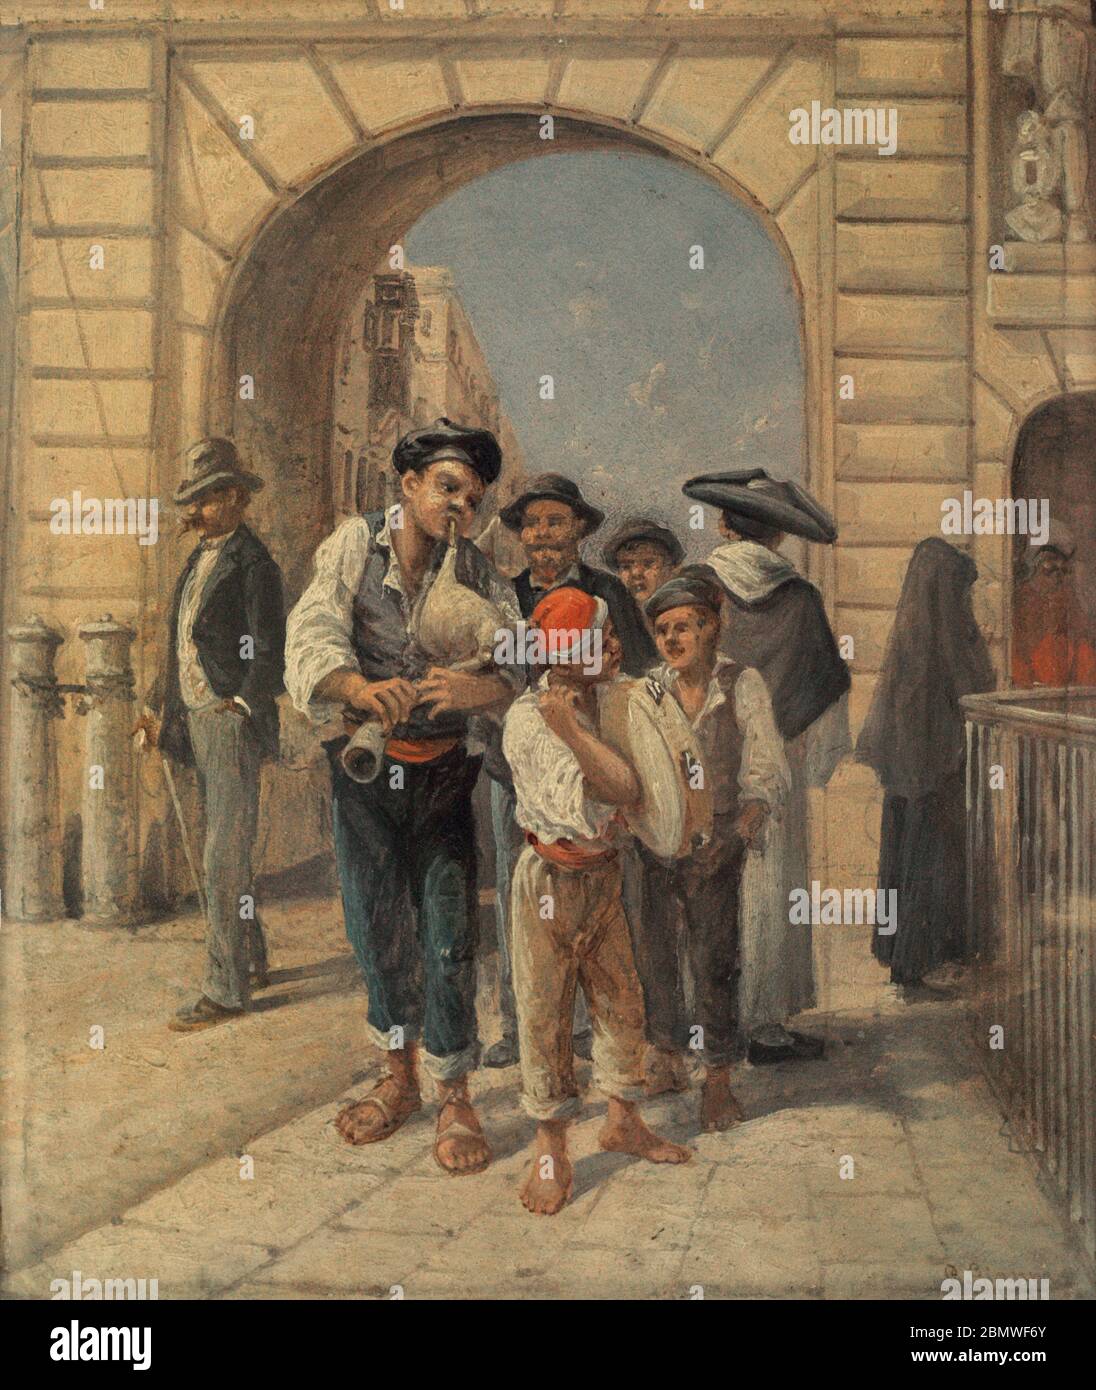 Girolamo Gianni (1837-1895). Italienischer Maler. Straßenmusiker in maltesischer Tracht, 1891. Öl auf Platte. Nationalmuseum der Schönen Künste Valletta. Malta. Stockfoto